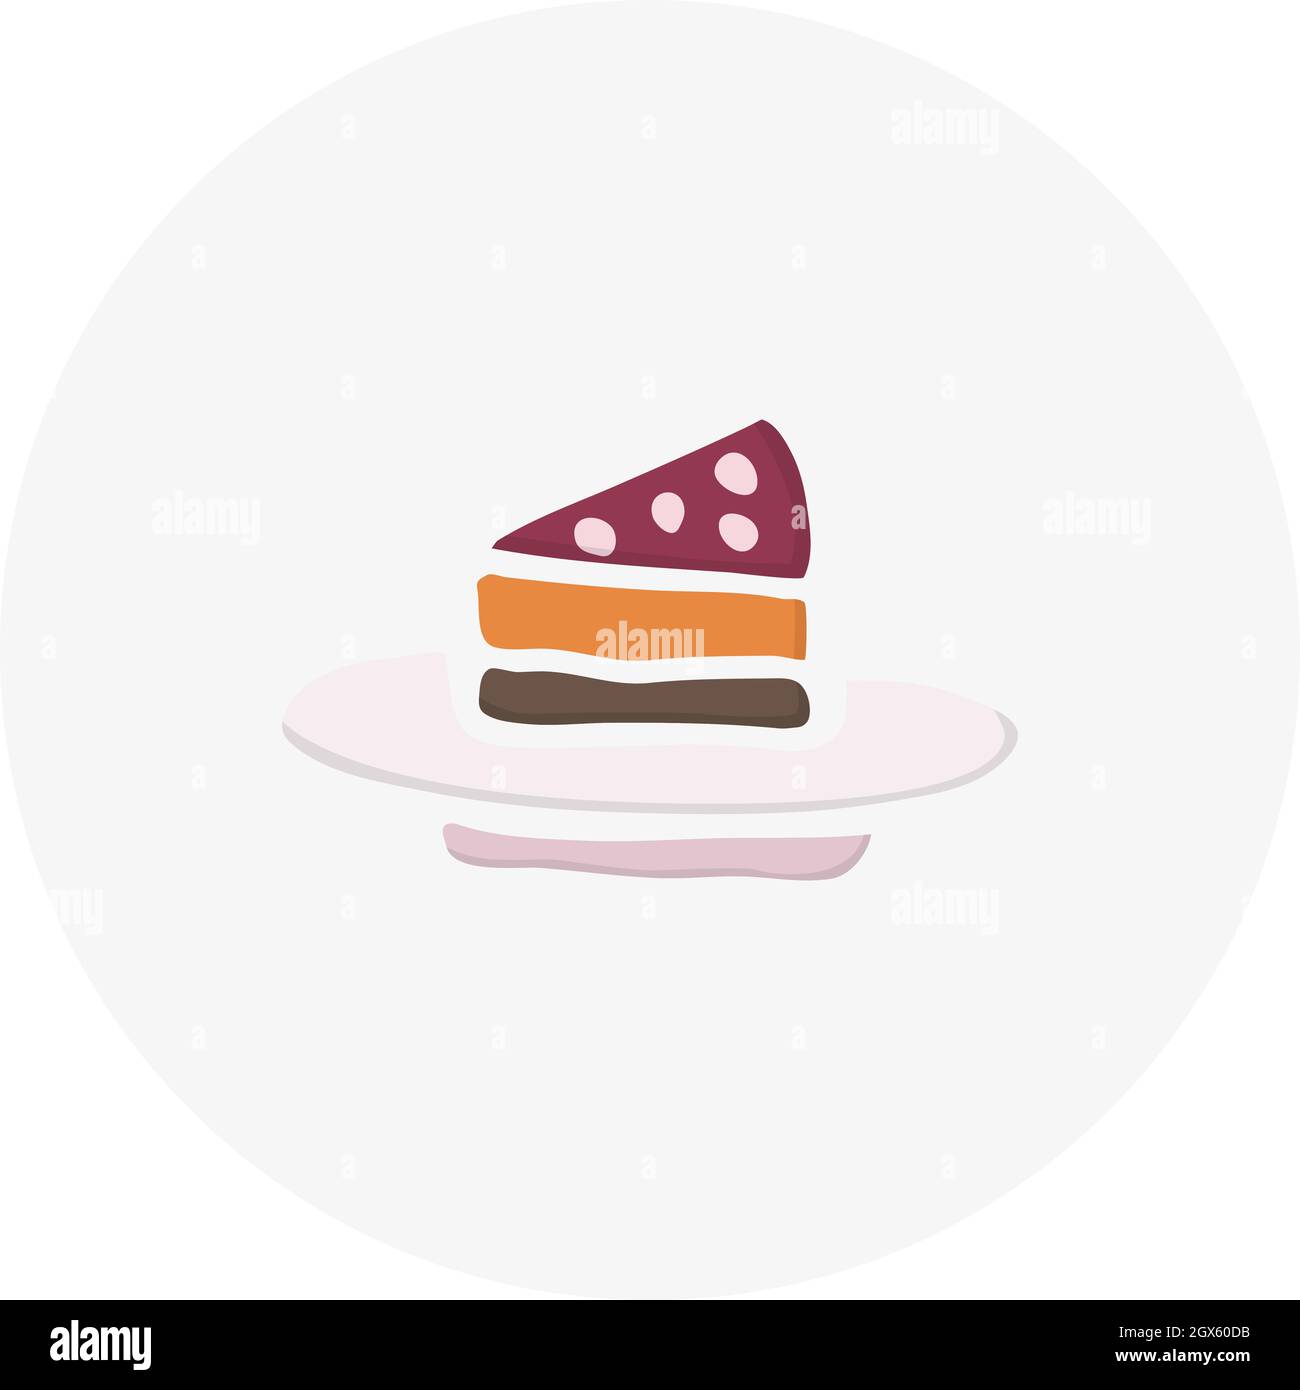 Handgezeichnetes Stück Kuchen. Vektordarstellung im Doodle-Stil. Gestaltungselement für Postkarten, Einladungen oder andere Grafik- und Webdesign. Stock Vektor